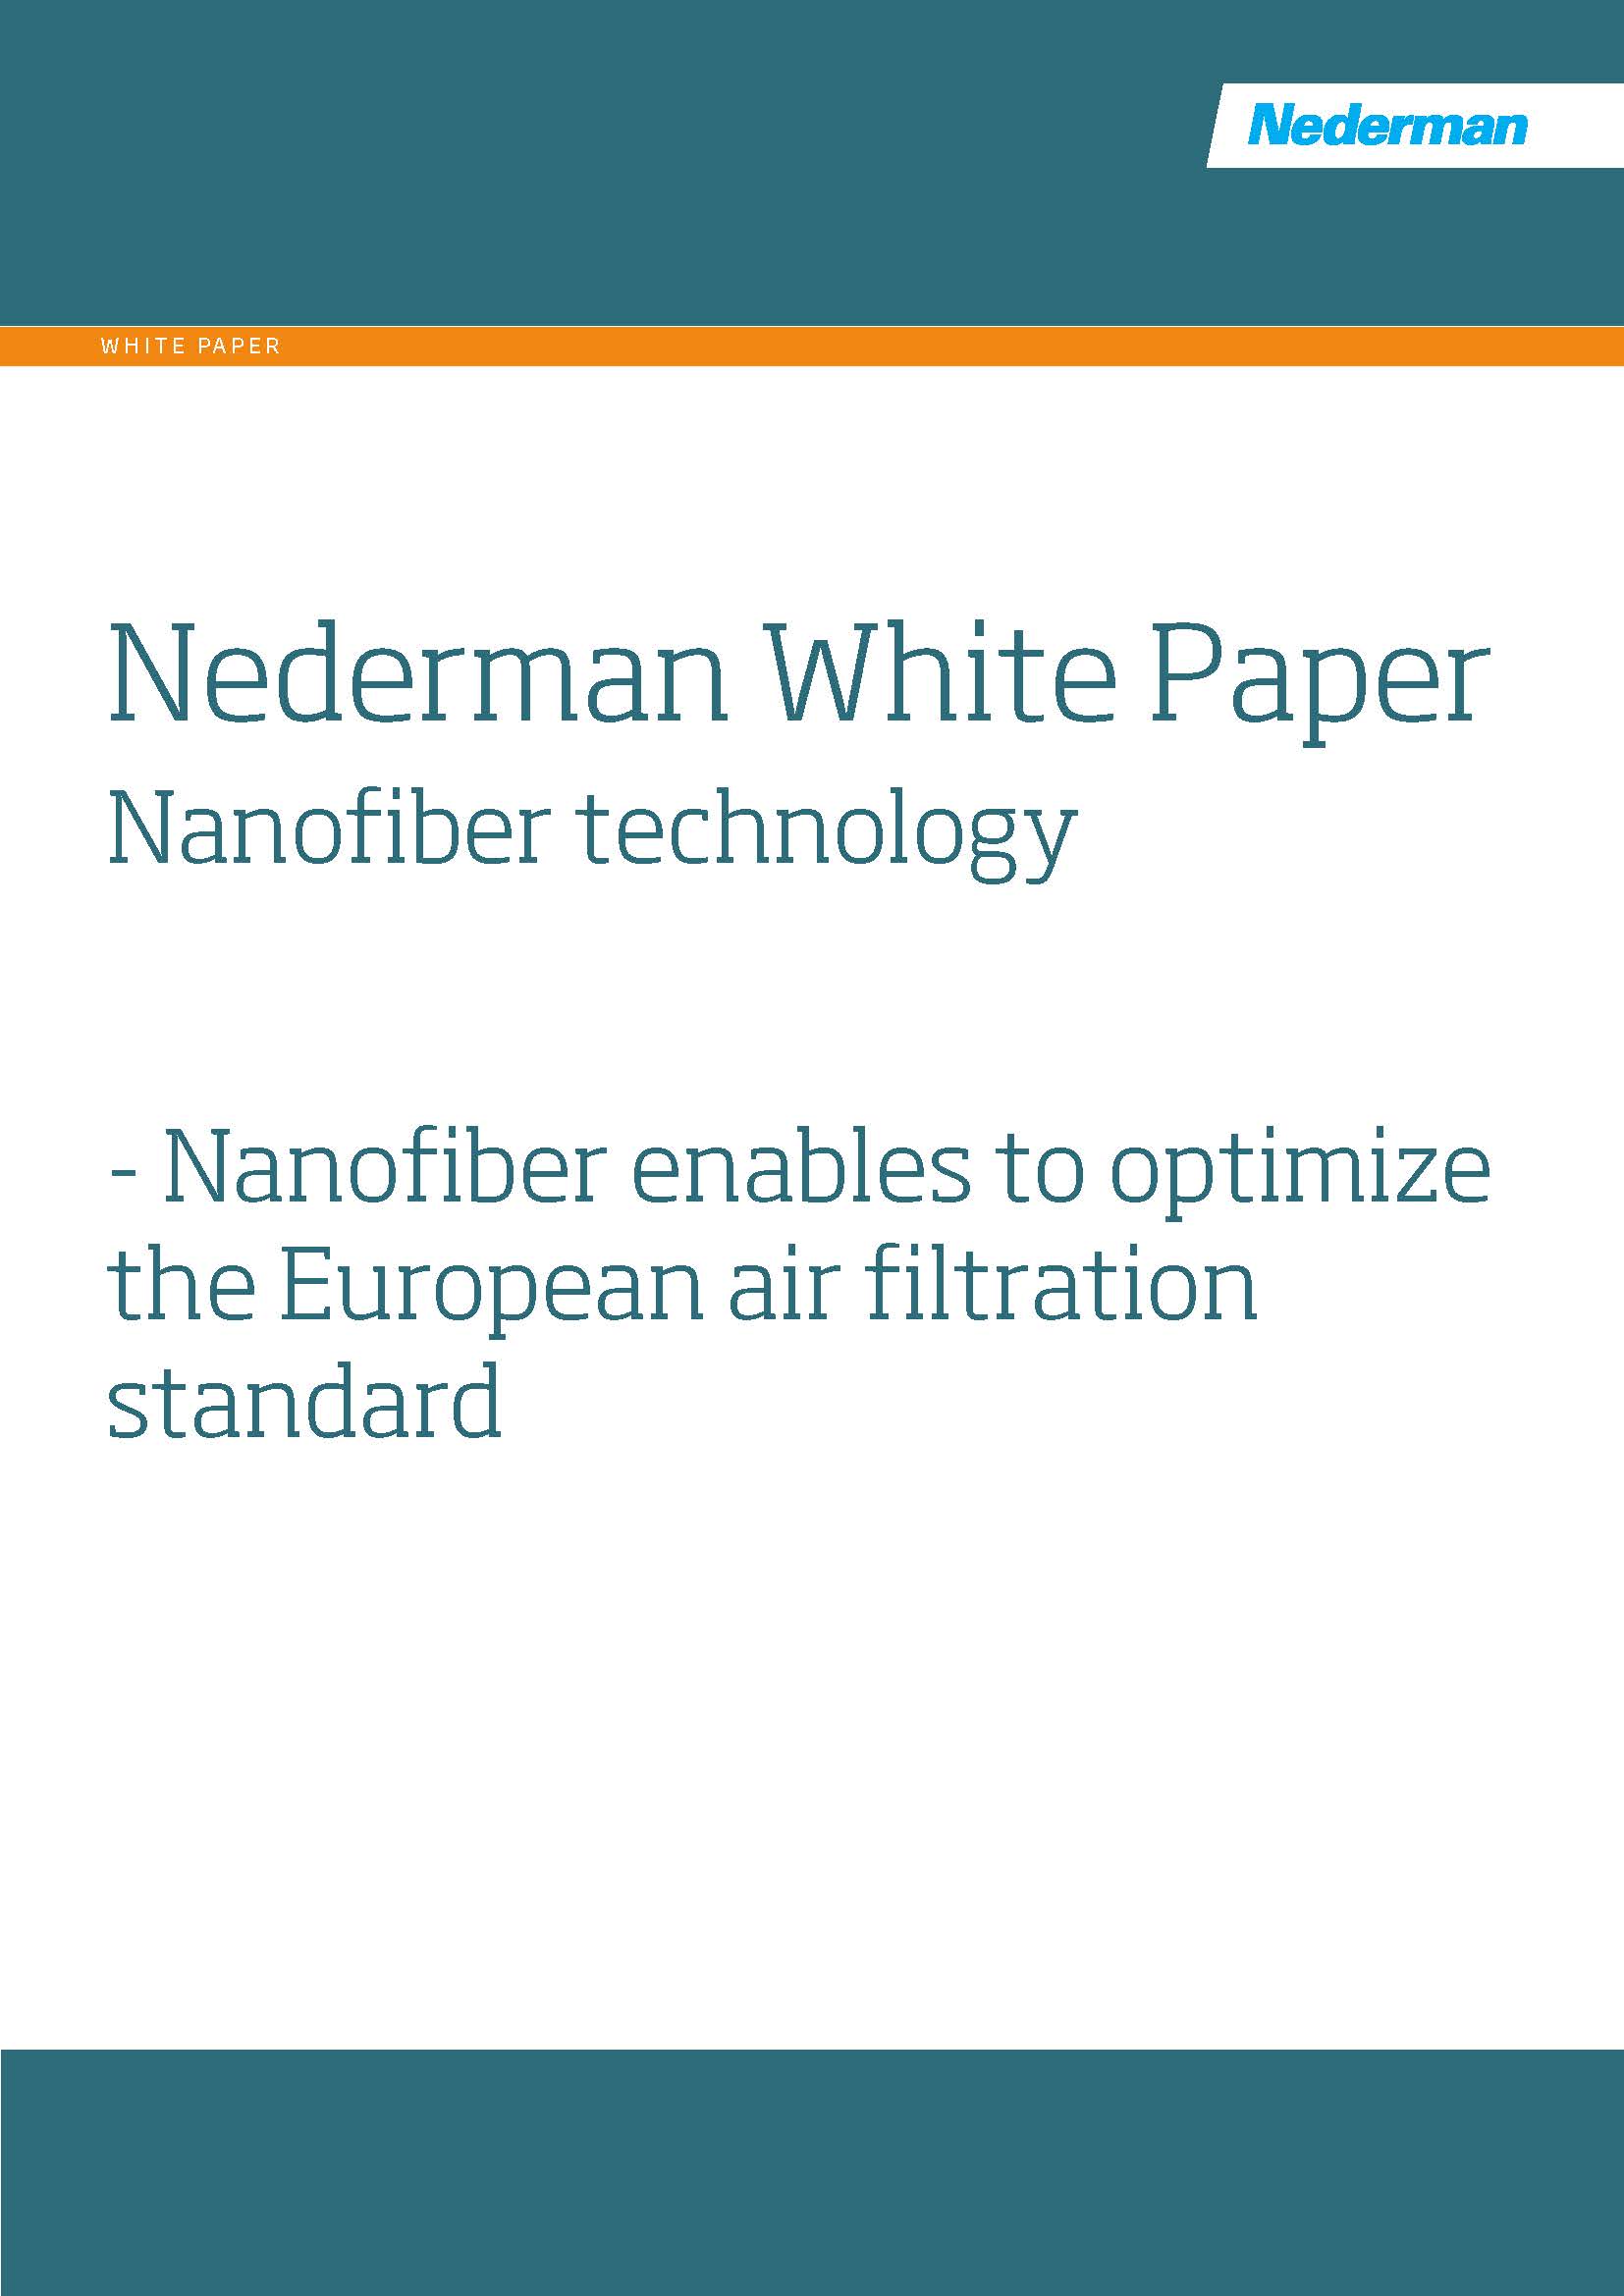 White Paper Nanofiber Technology